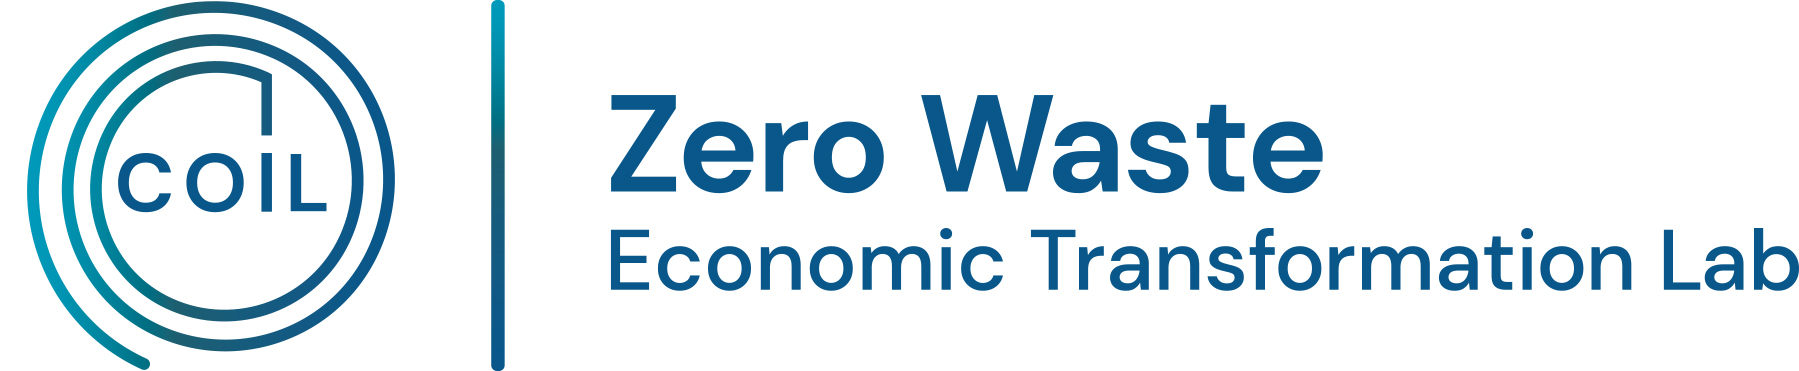 Logo for COIL Zero Waste Economic Transformation Lab